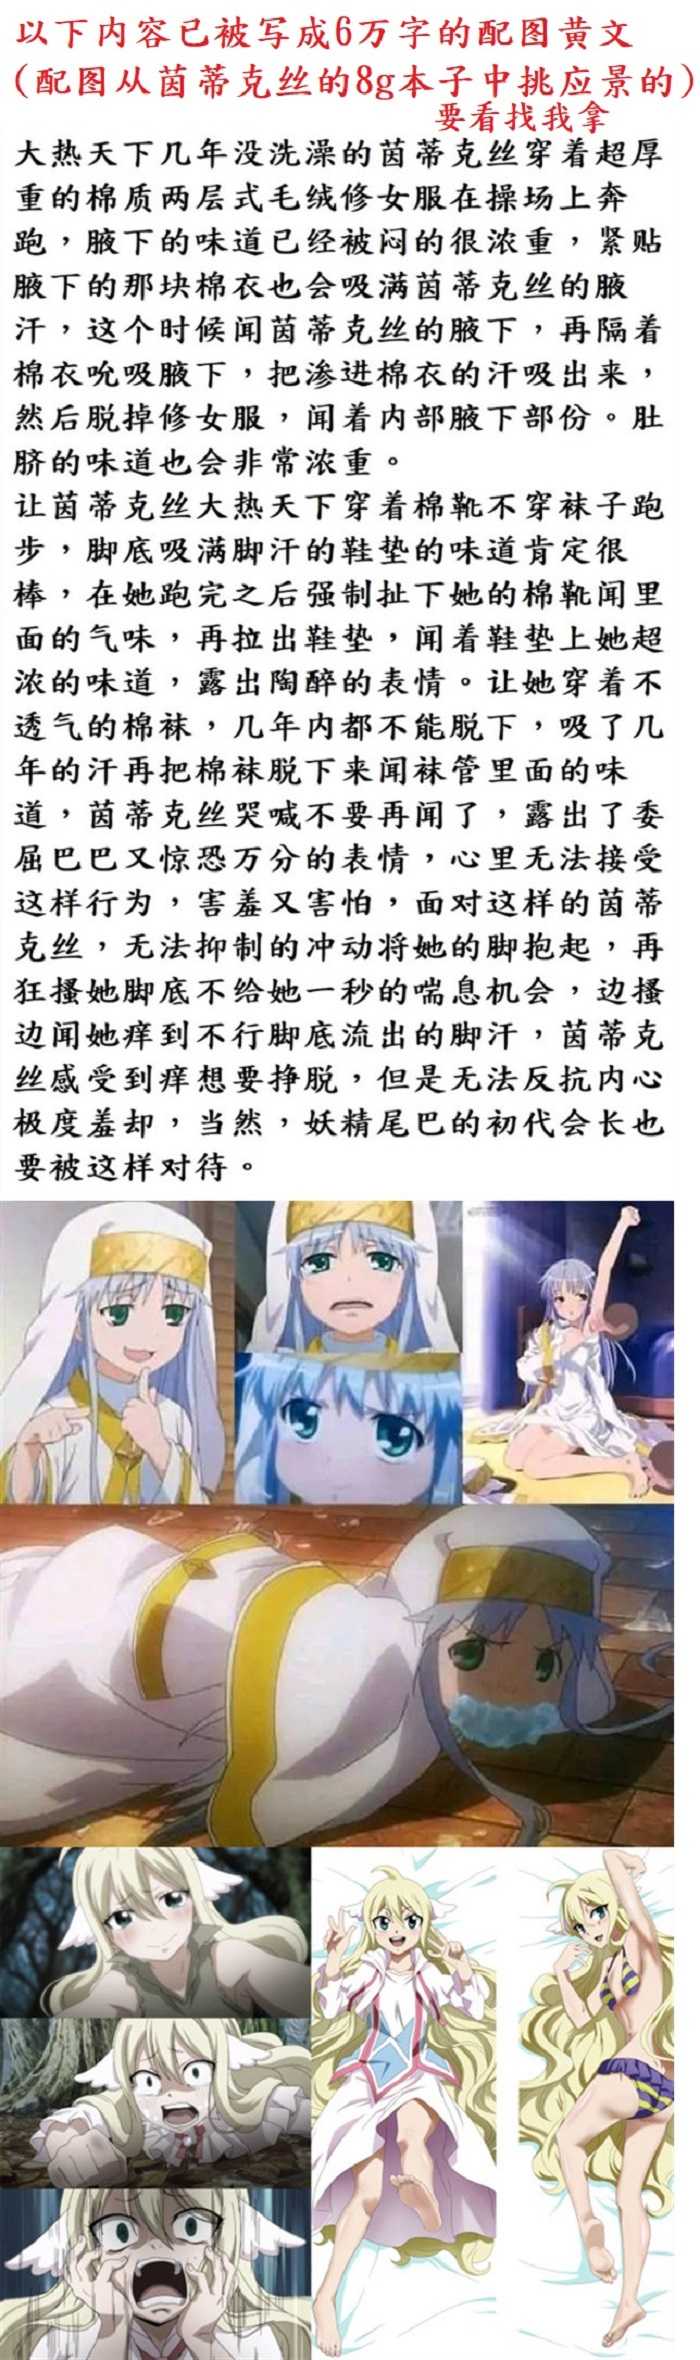 茵蒂克丝:谁先让我高潮我就嫁给谁(Toaru Majutsu no Index) [Chinese] - Page 12